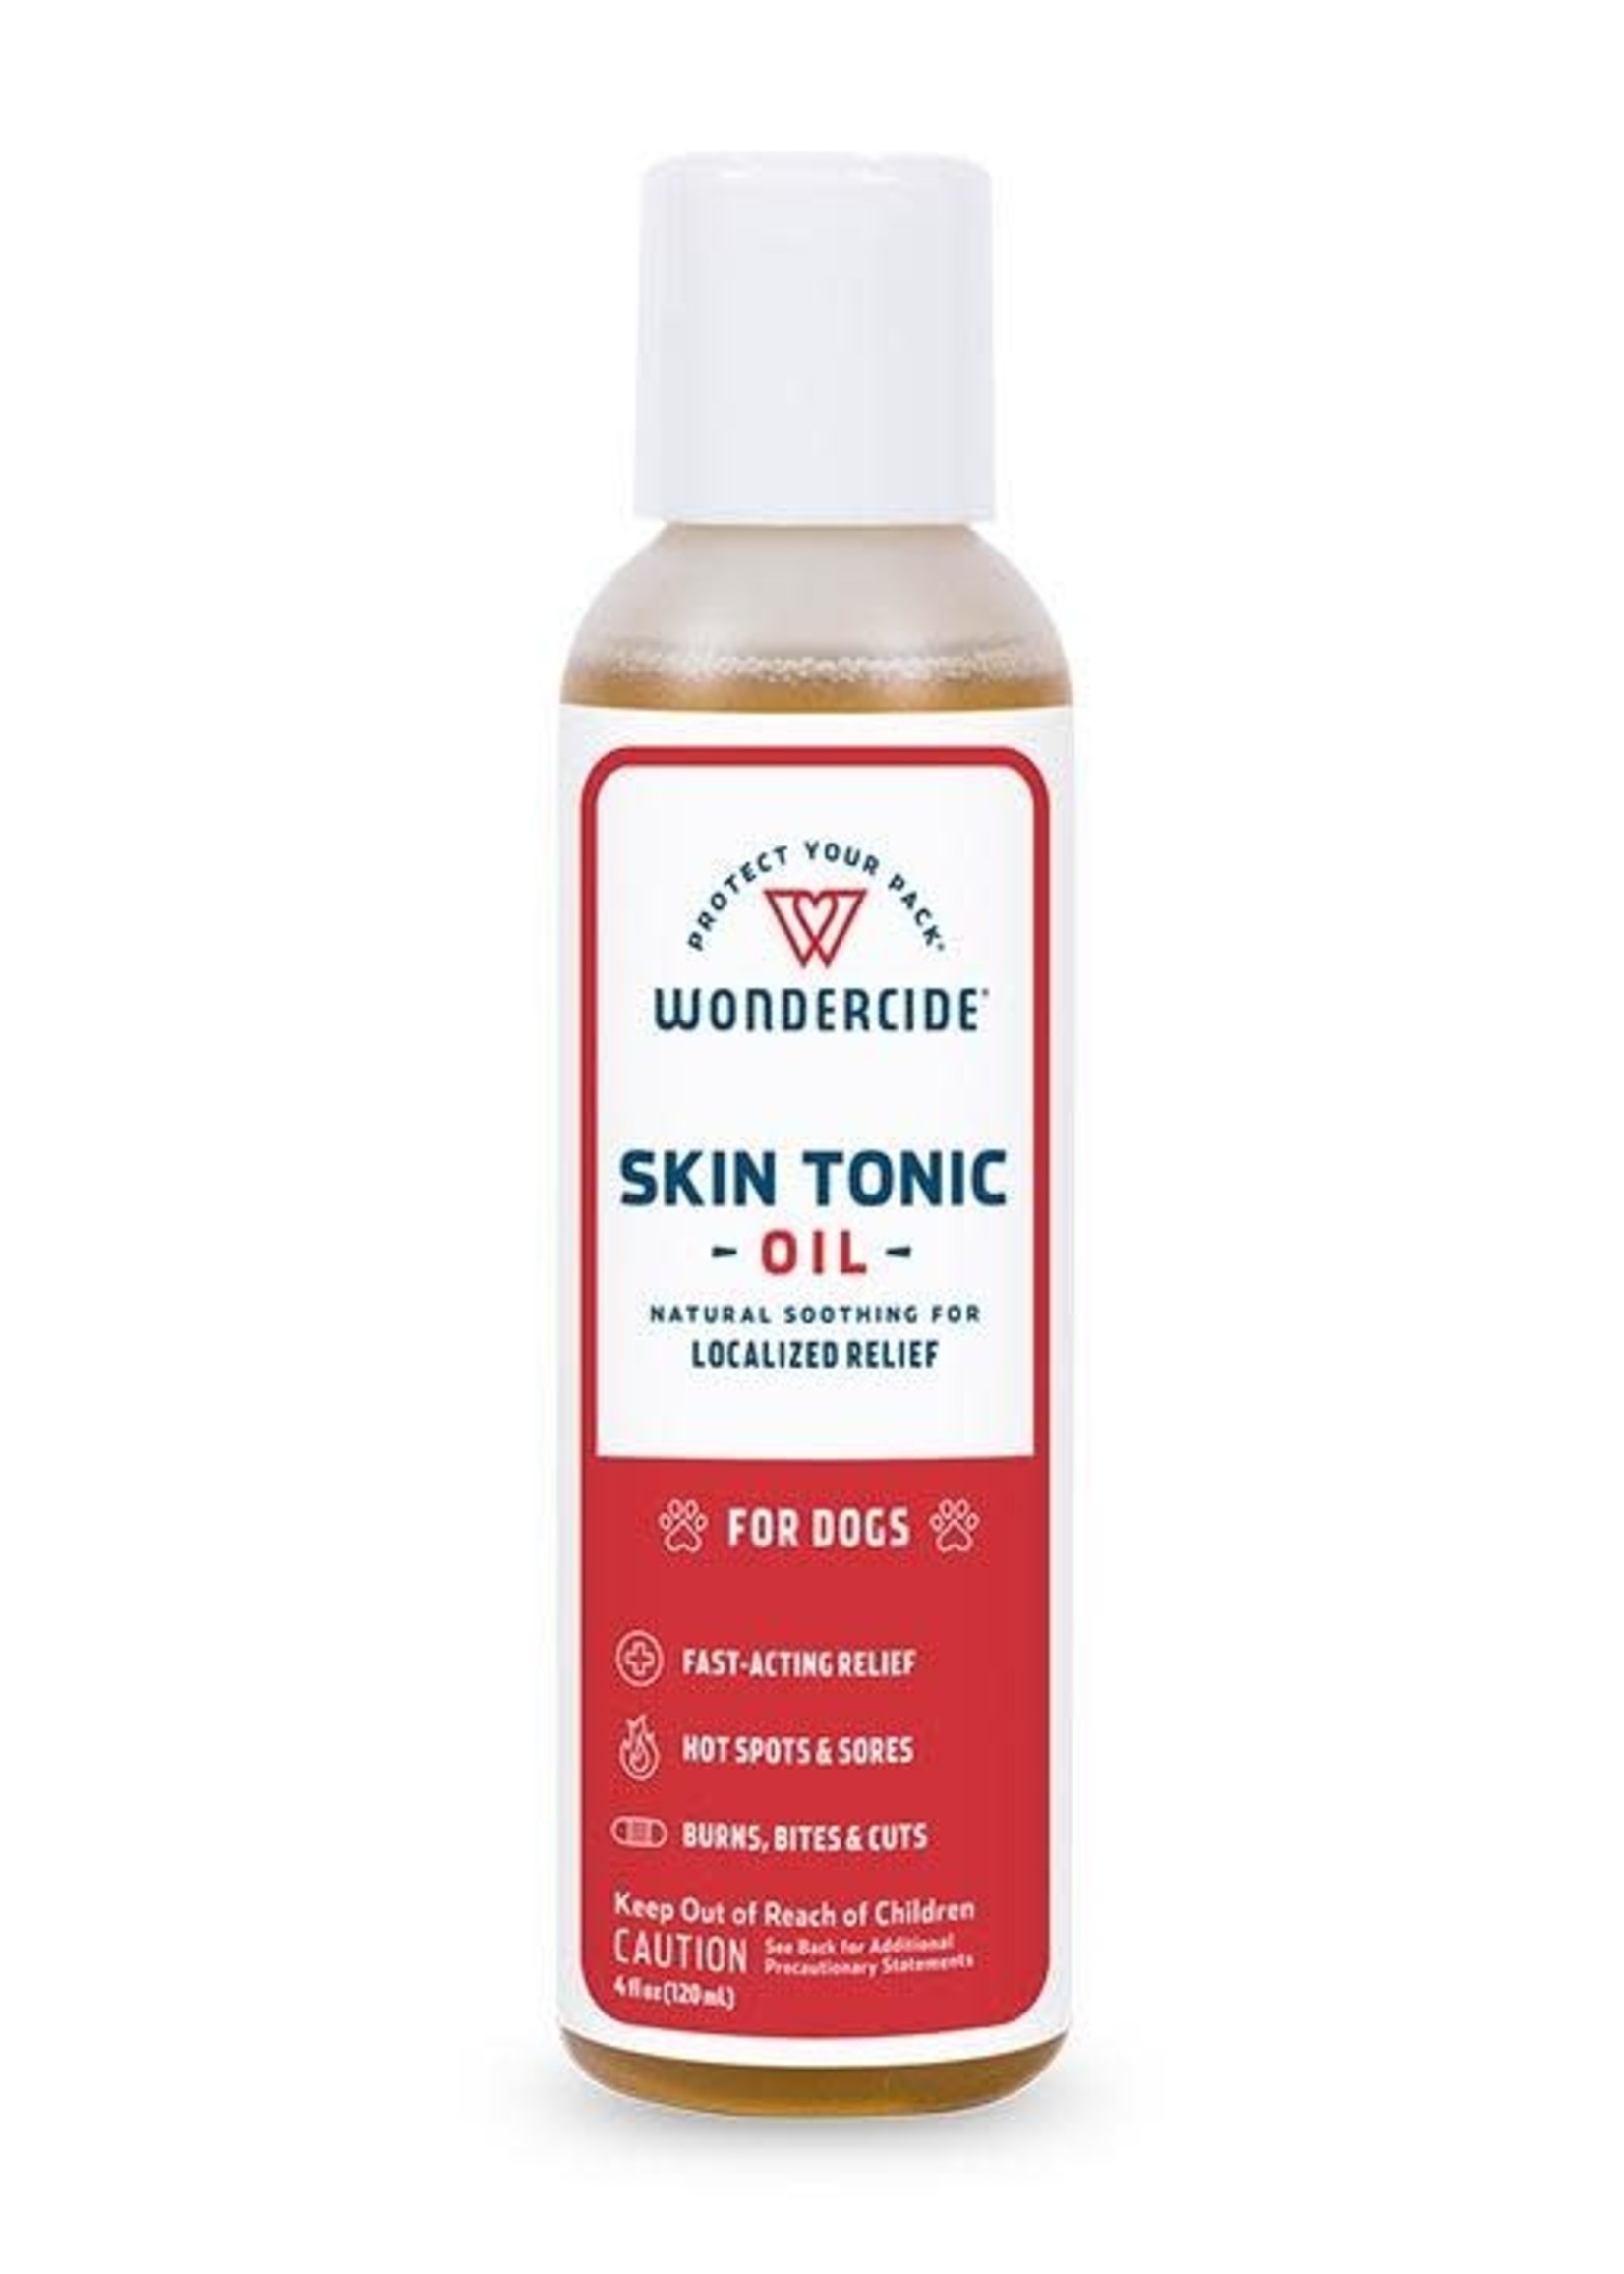 Wondercide Wondercide Skin Tonic Oil 4 oz